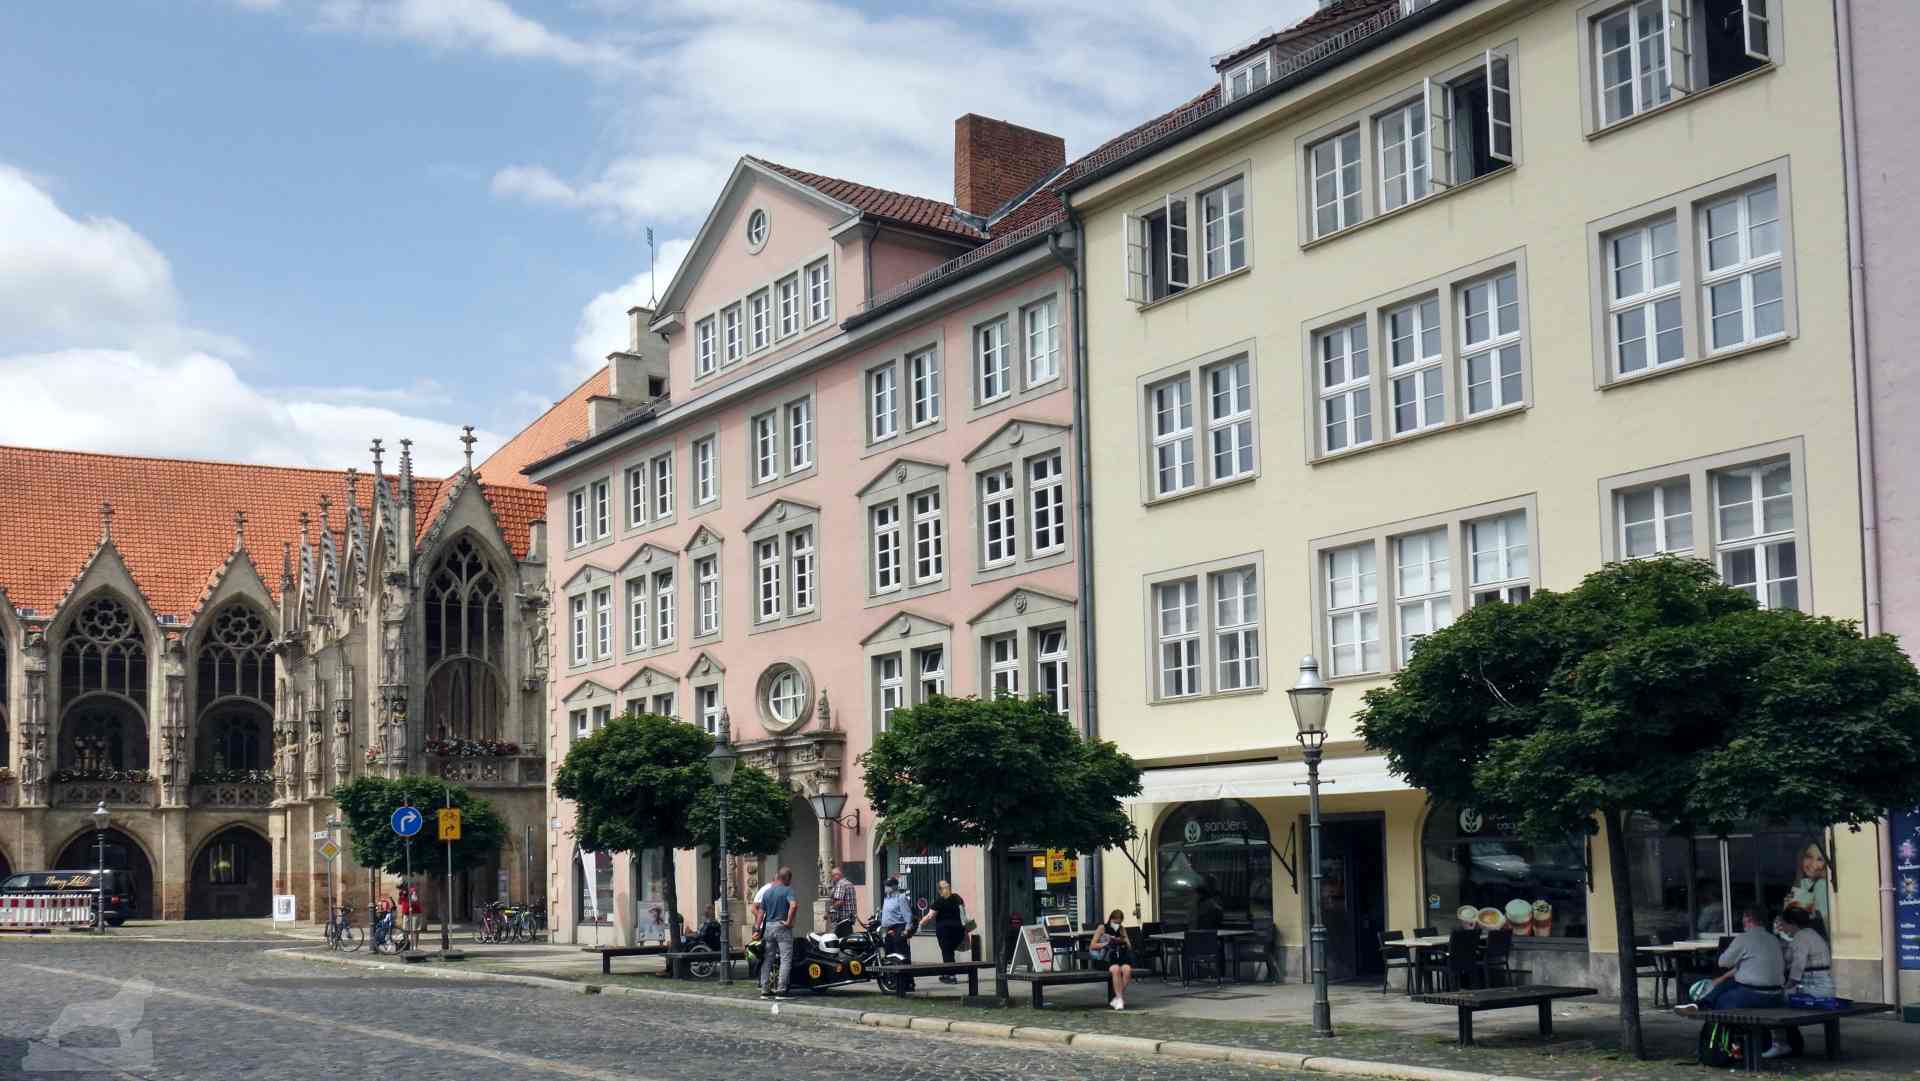 Altstadtmarkt